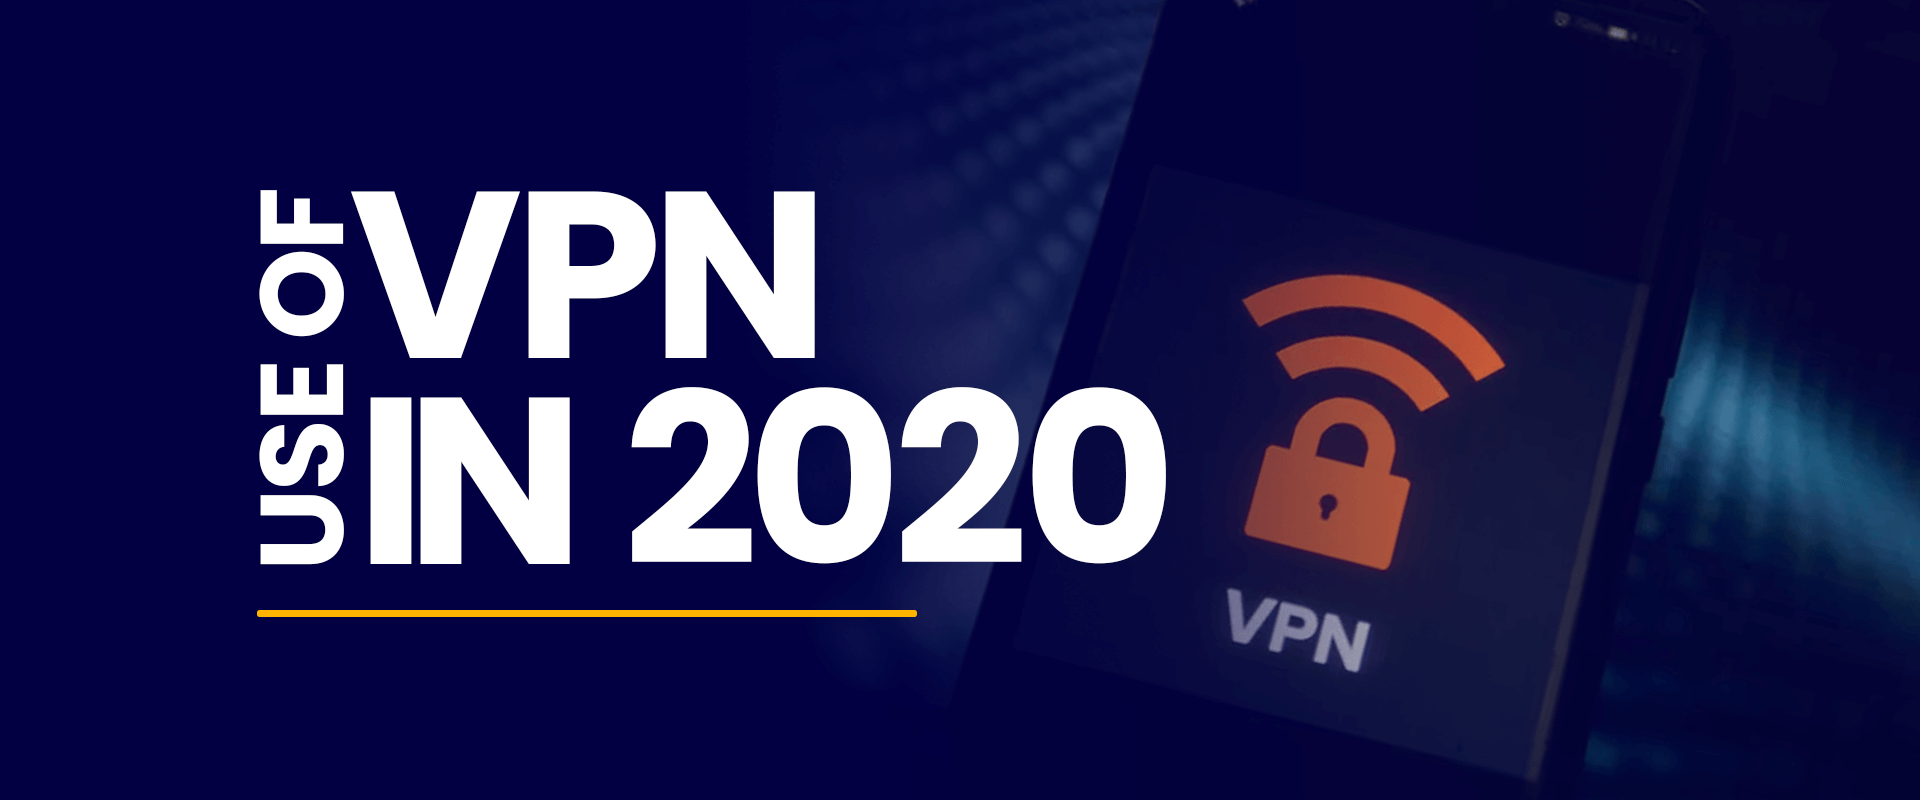 Use of VPN in 2020